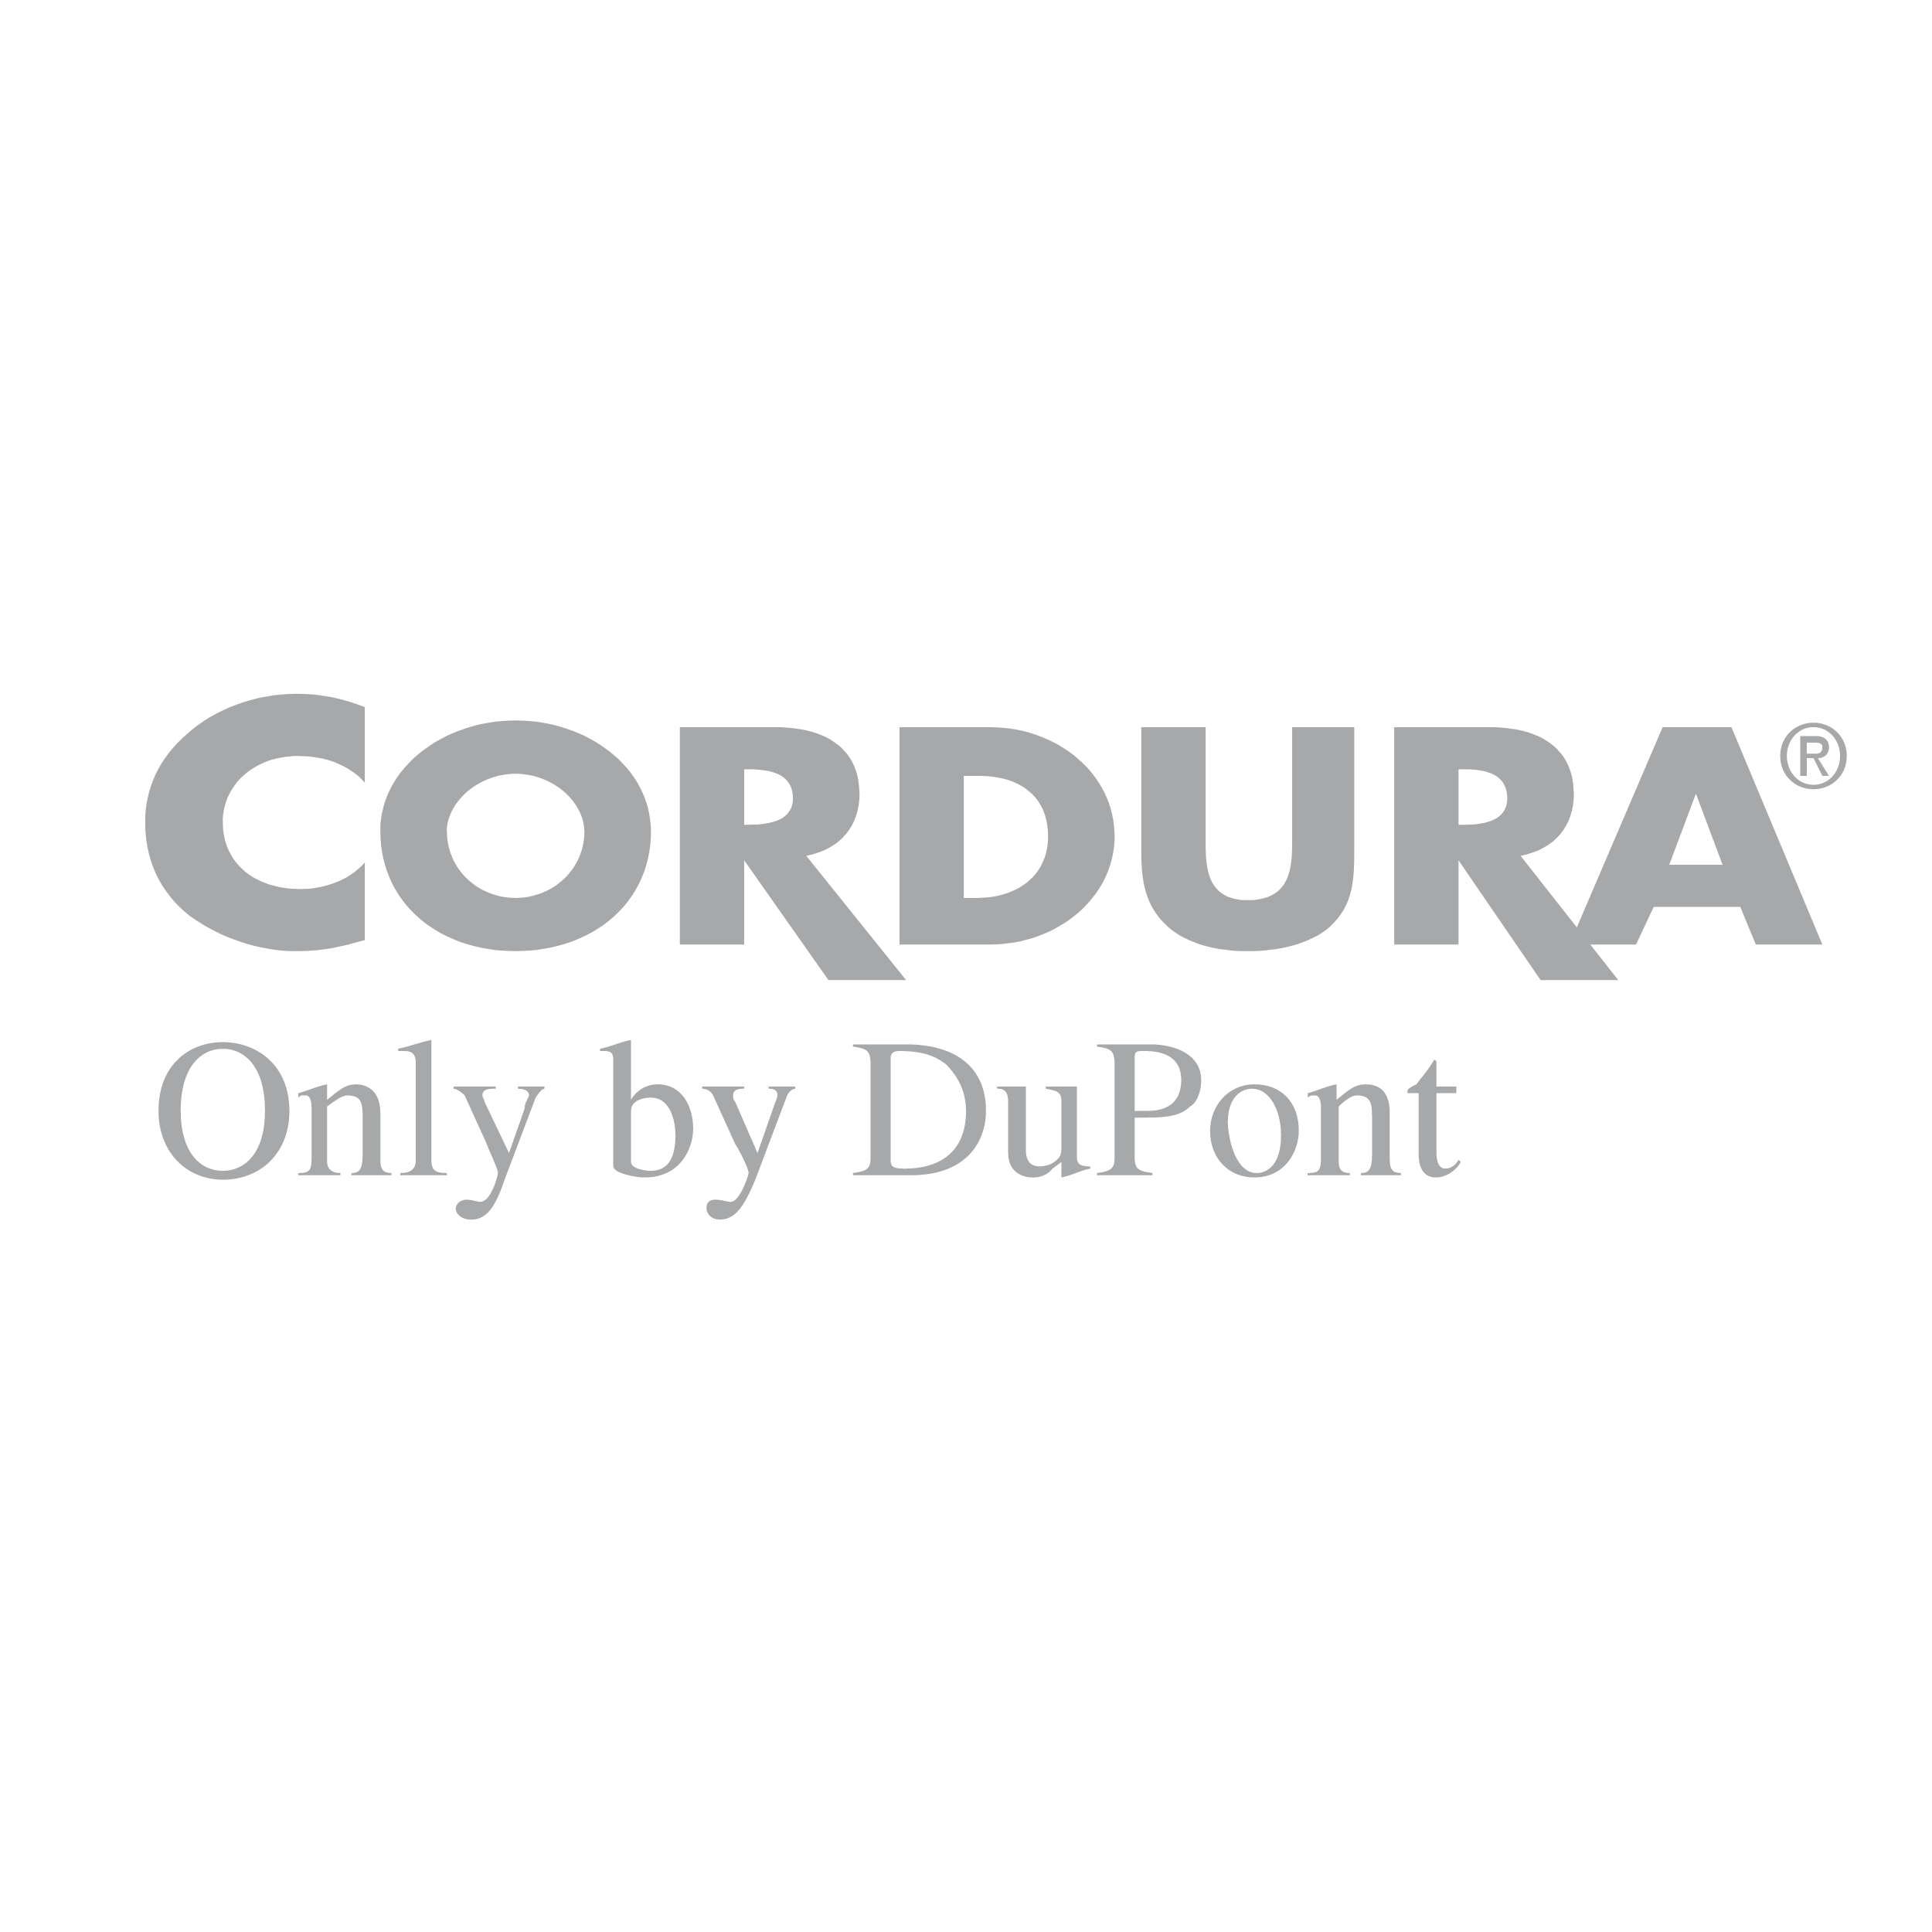 Cordura Logo Logos